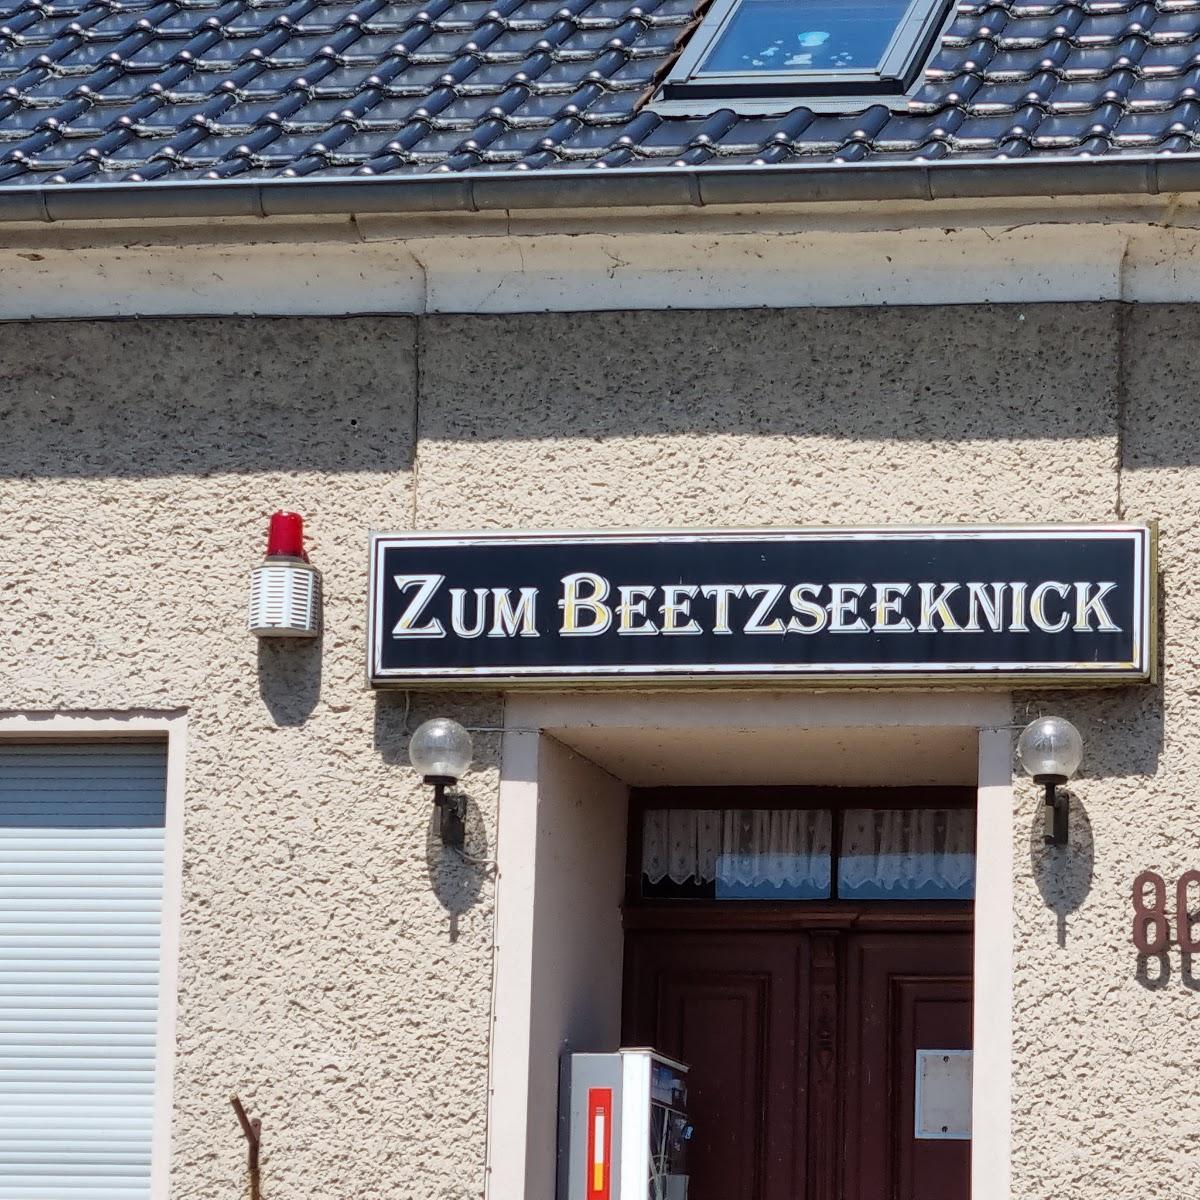 Restaurant "Zum knick" in Beetzsee